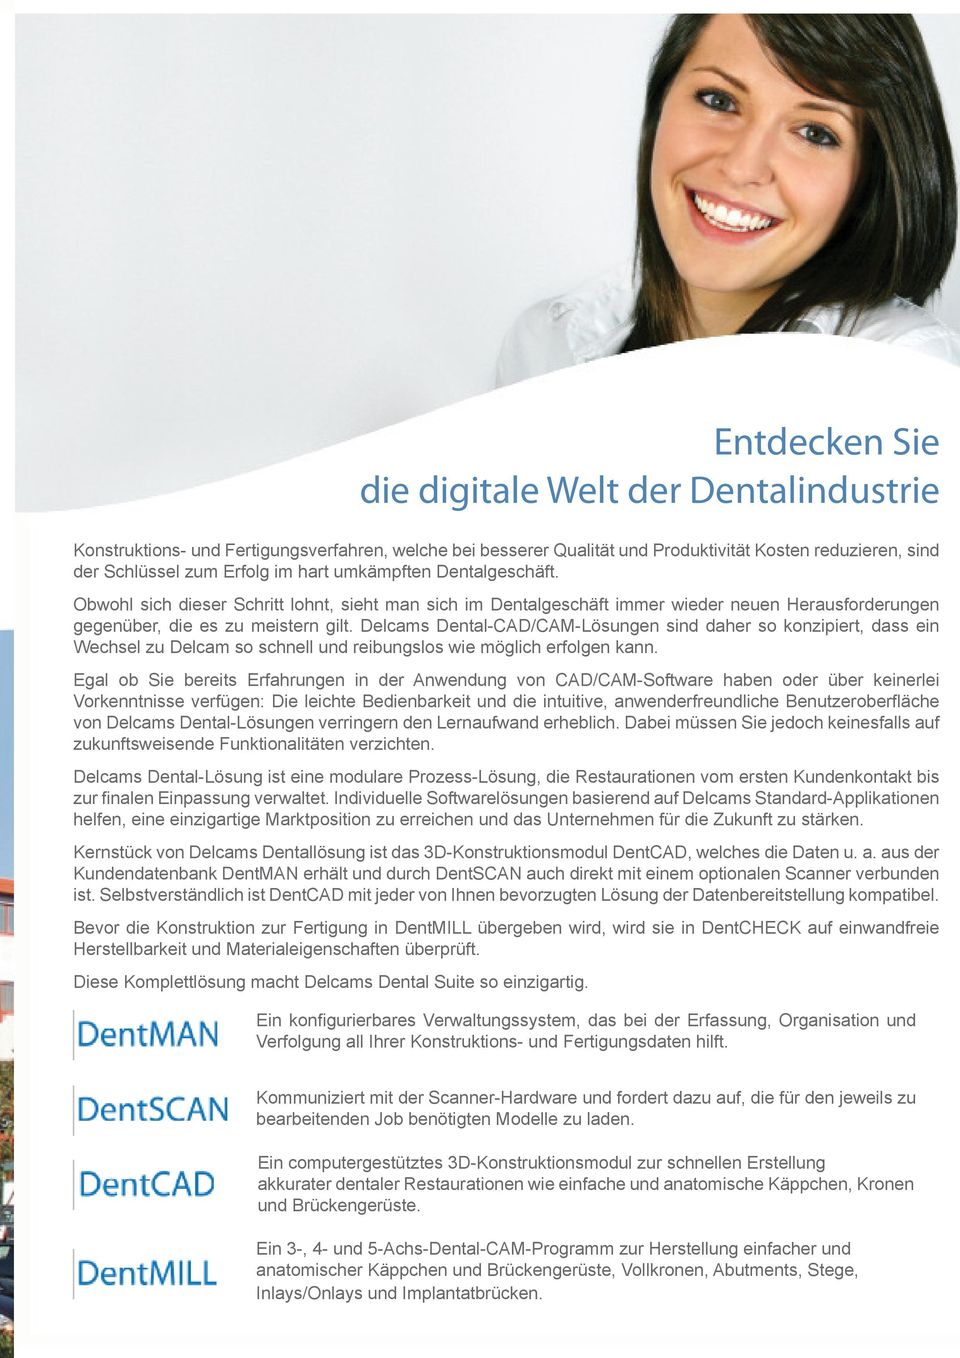 Delcams Dental-CAD/CAM-Lösungen sind daher so konzipiert, dass ein Wechsel zu Delcam so schnell und reibungslos wie möglich erfolgen kann.